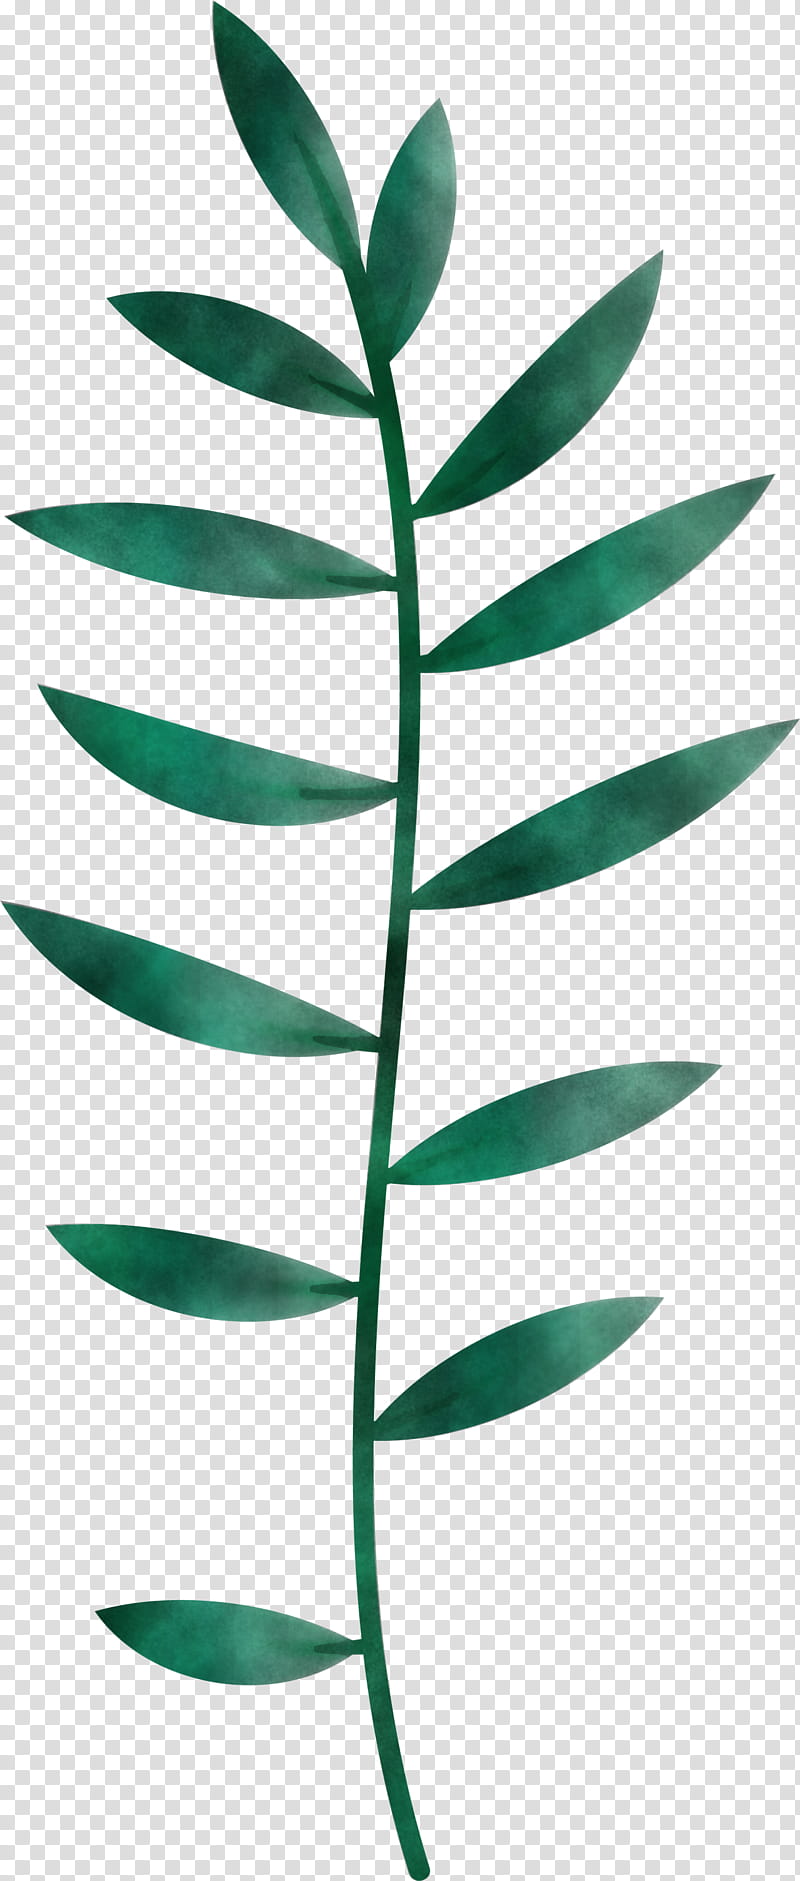 Leaf, Plant Stem, Branch, synthesis, Twig, Transpiration, Leaf Angle Distribution, Plant Morphology transparent background PNG clipart